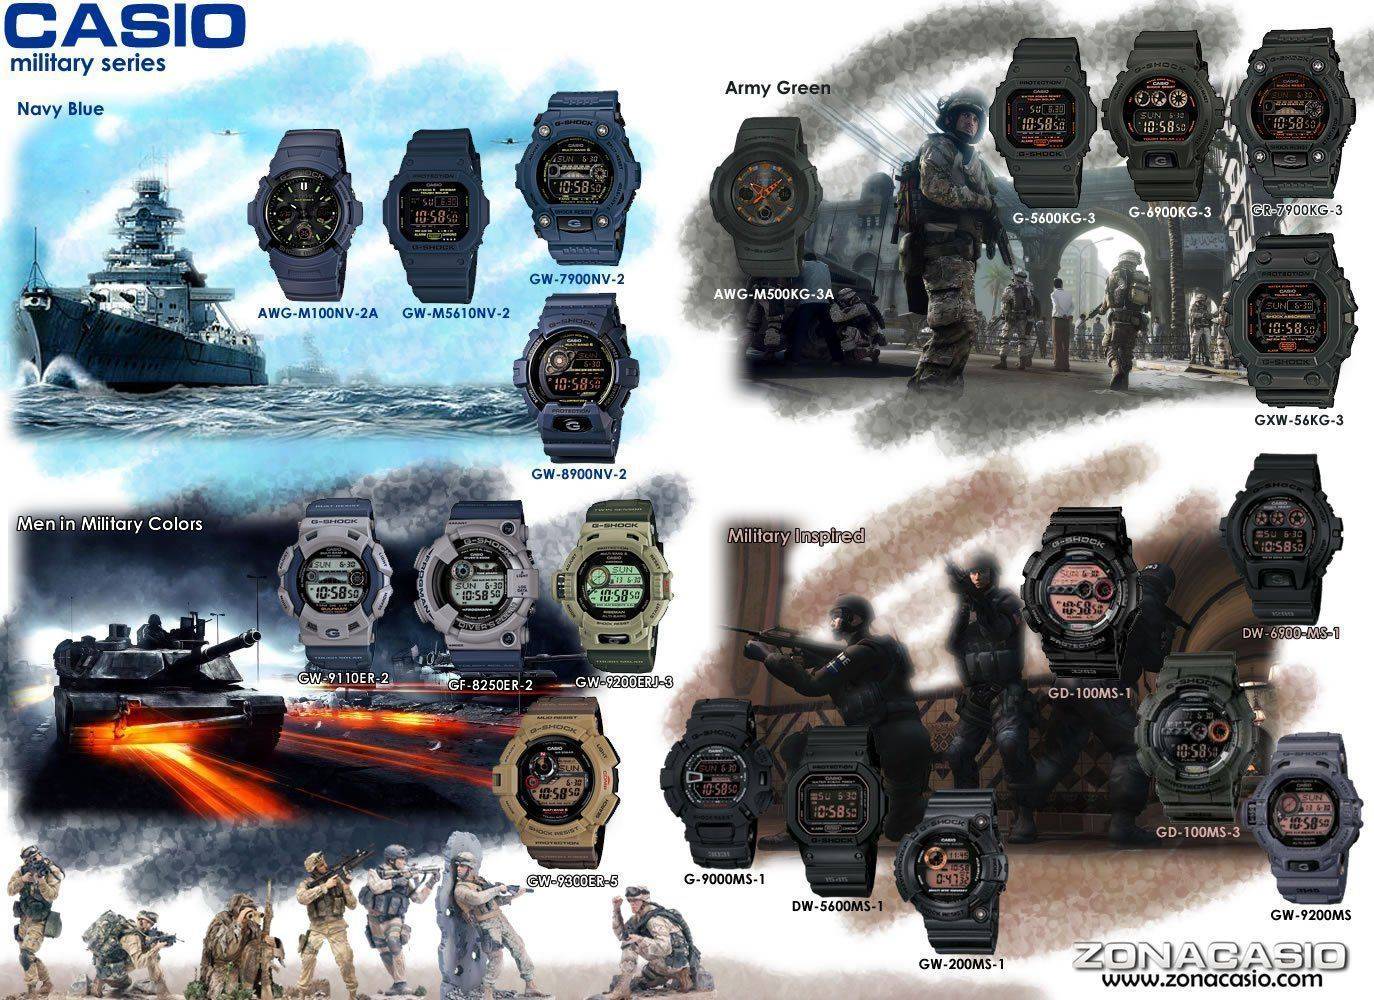 casio-g-shock-military-series-2012.jpg